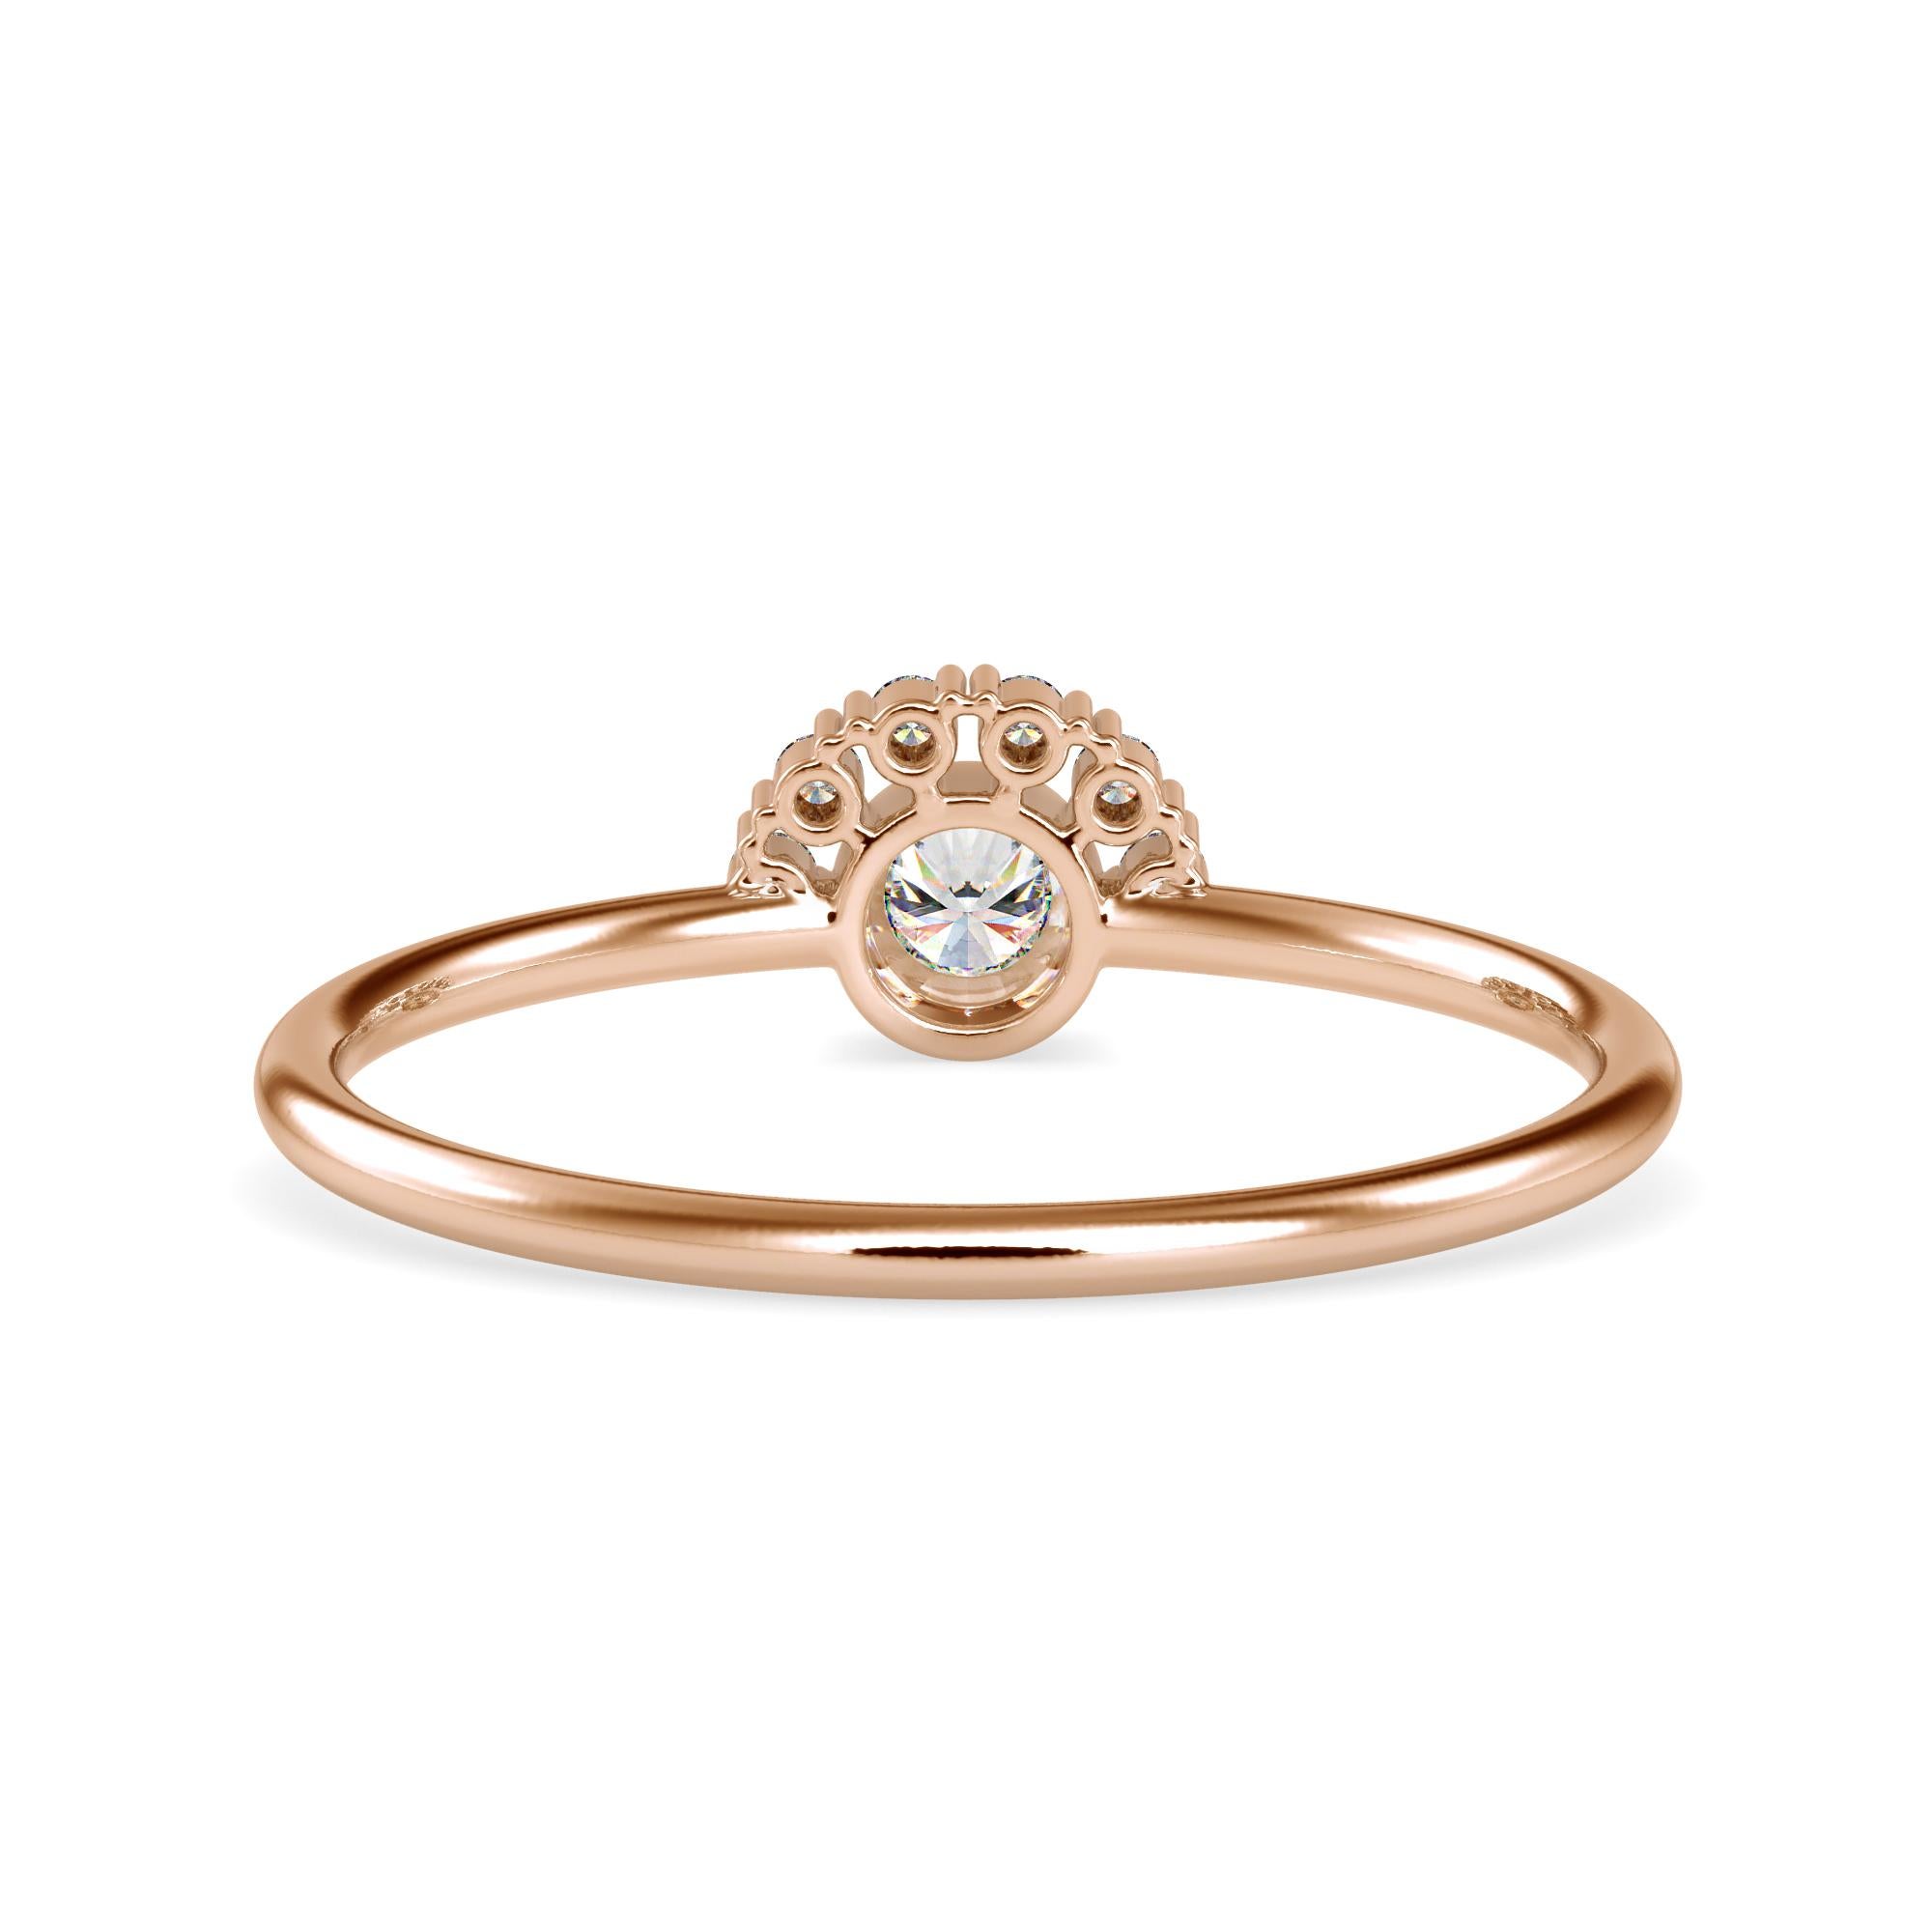 0.13 Carat Diamond 14K Rose Gold Ring
Stamped: 14K
Total Ring Weight: 1.3 Grams
Diamond Weight: 0.04 Carat (F-G Color, VS2-SI1 Clarity) 1.2 Millimeters
Diamond Weight: 0.09 Carat (F-G Color, VS2-SI1 Clarity) 2.9 Millimeters 
Diamond Quantity: 7